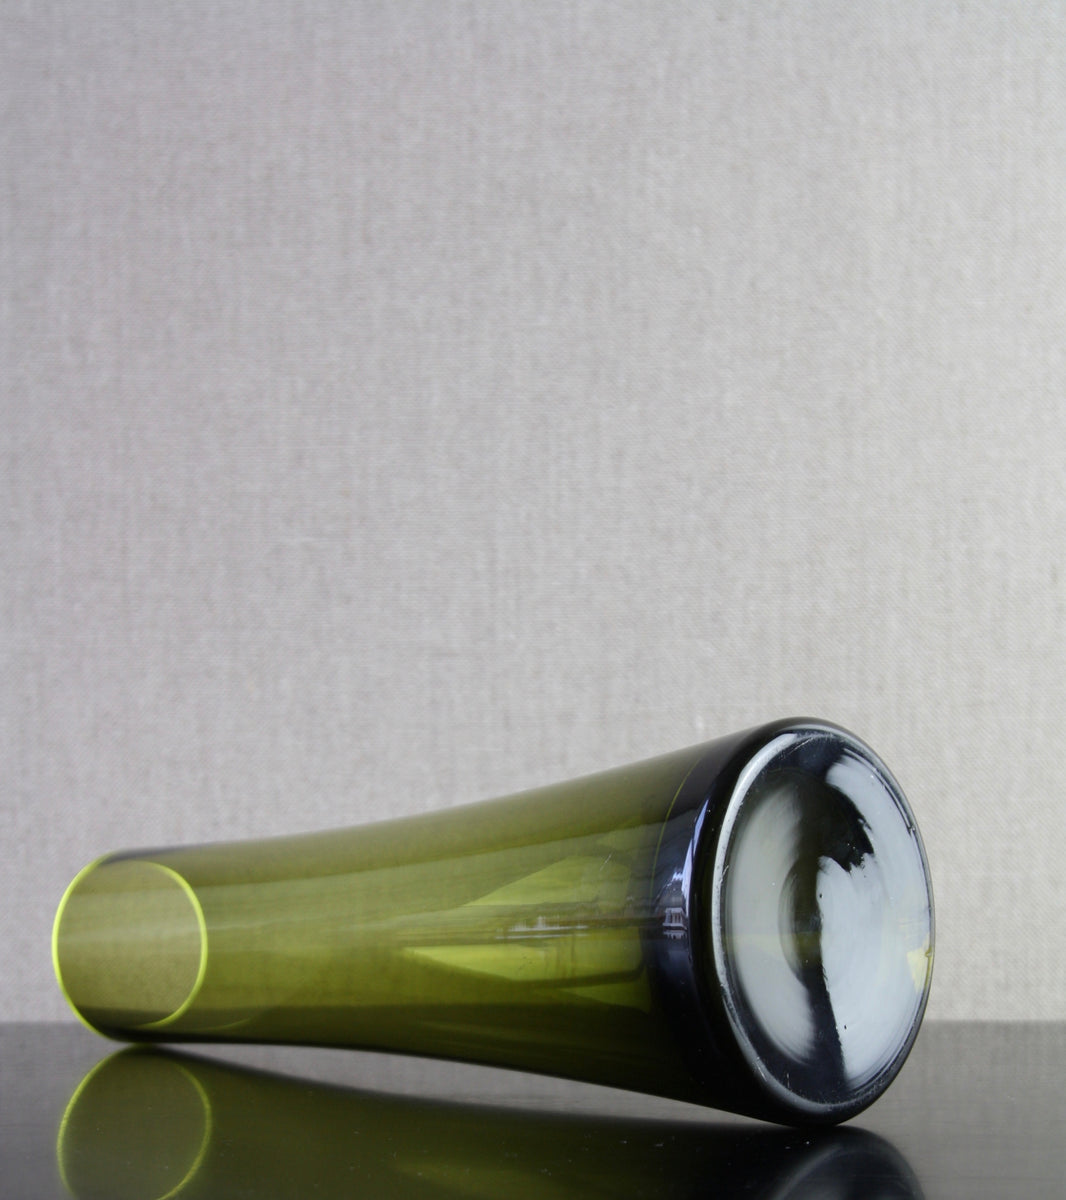 Olive Green Model 1368 Vase / Tamara Aladin, C. 1970